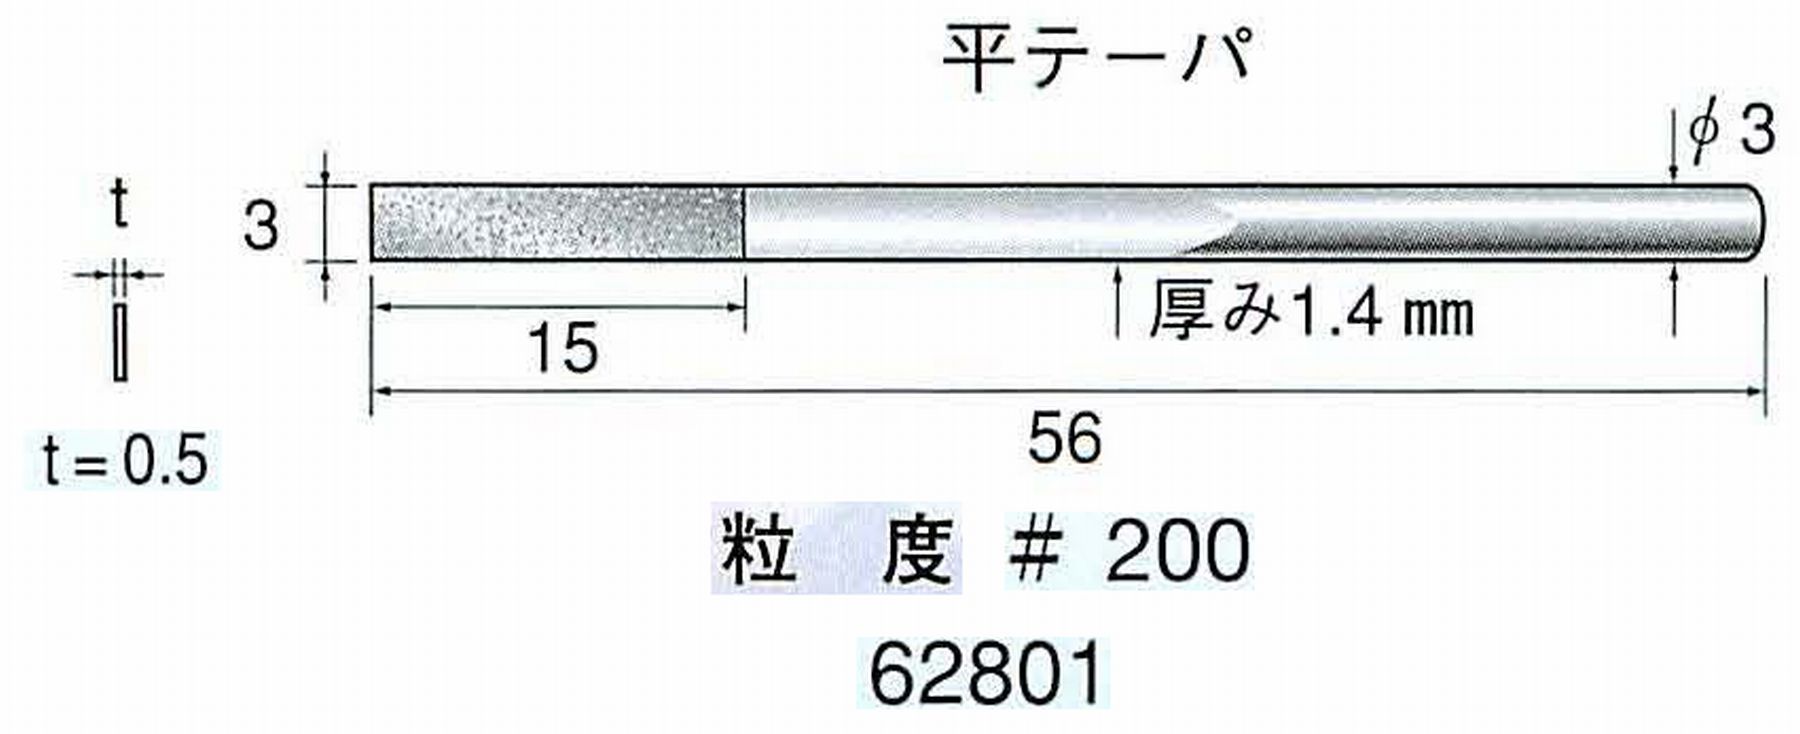 ナカニシ/NAKANISHI 電着ダイヤモンドヤスリショートタイプ 平テーパ 62801